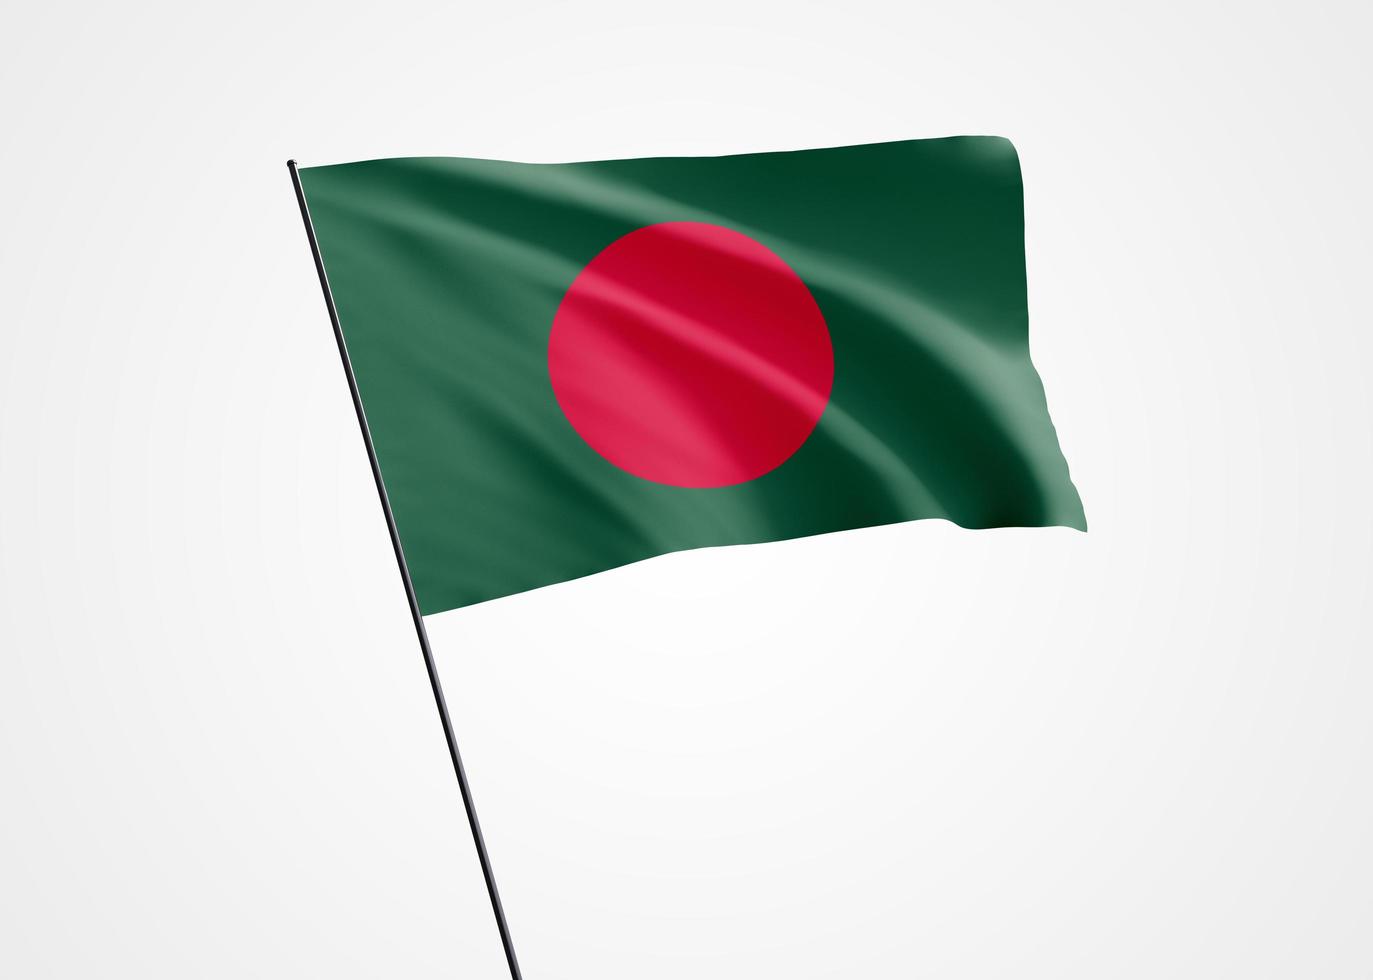 drapeau du Bangladesh volant haut dans le fond blanc isolé. 26 mars fête de l'indépendance du Bangladesh. collection de drapeaux nationaux du monde collection de drapeaux nationaux du monde photo